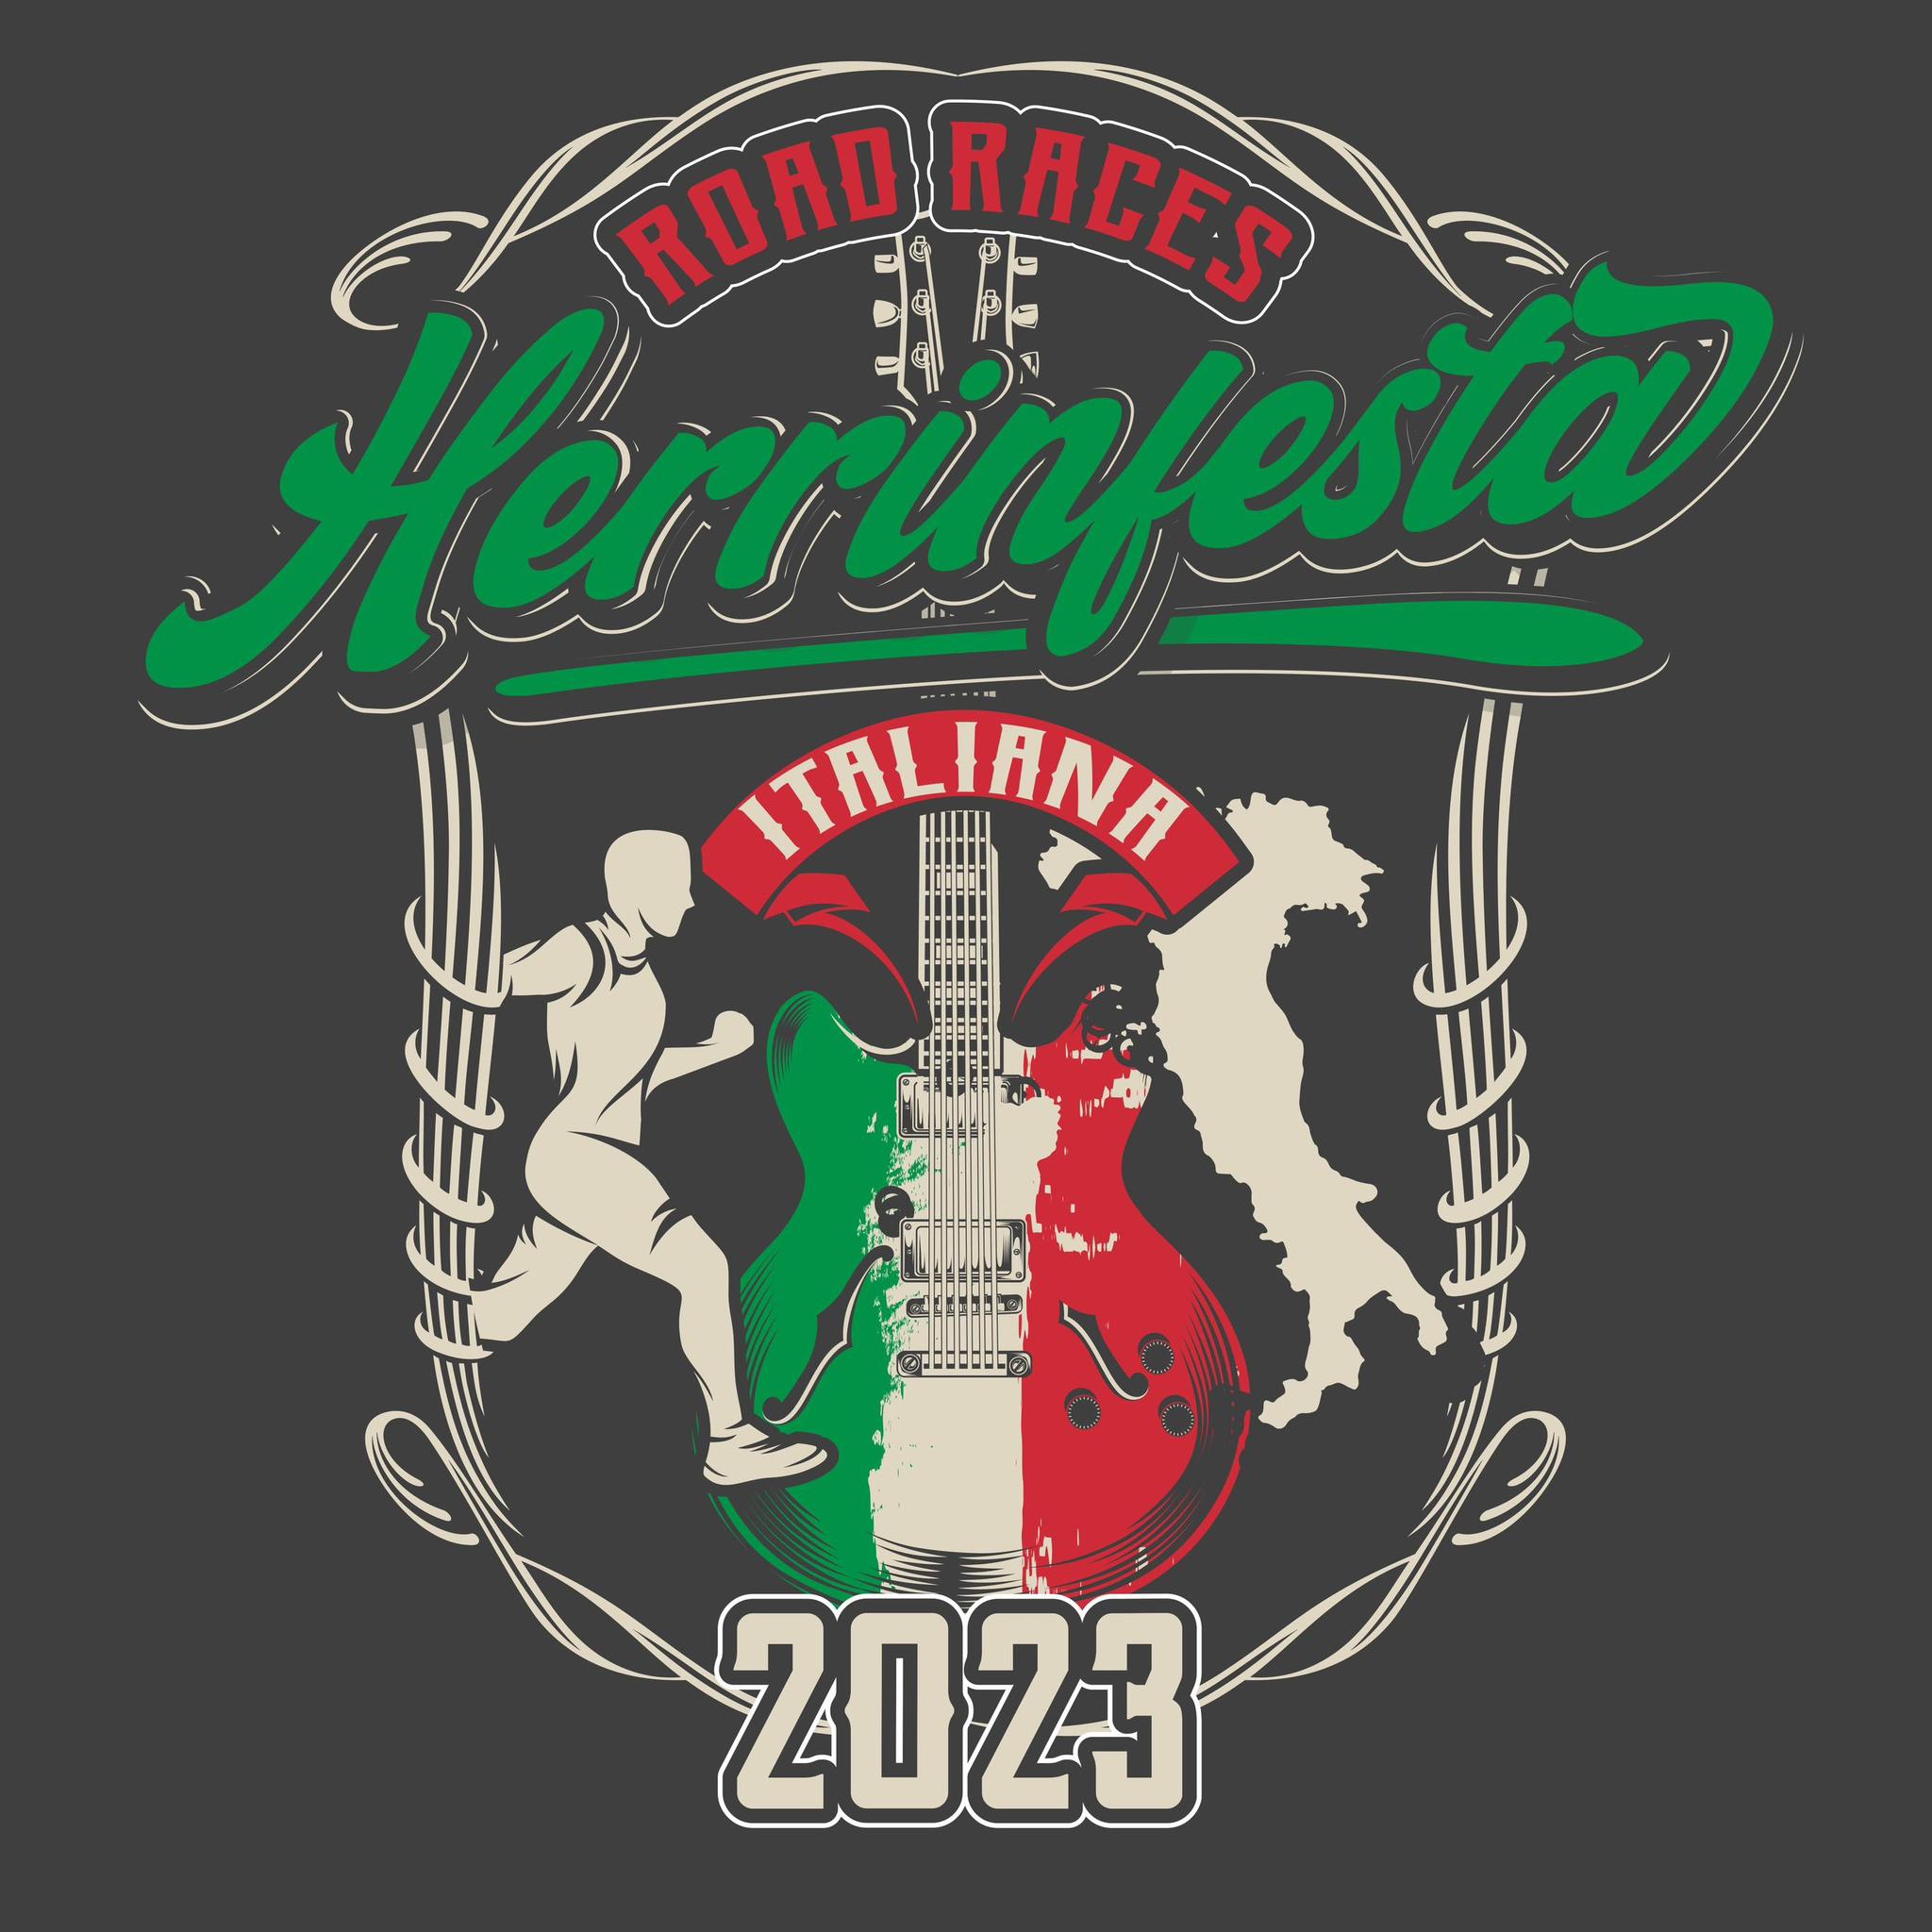 HerrinFesta Road Races logo on RaceRaves